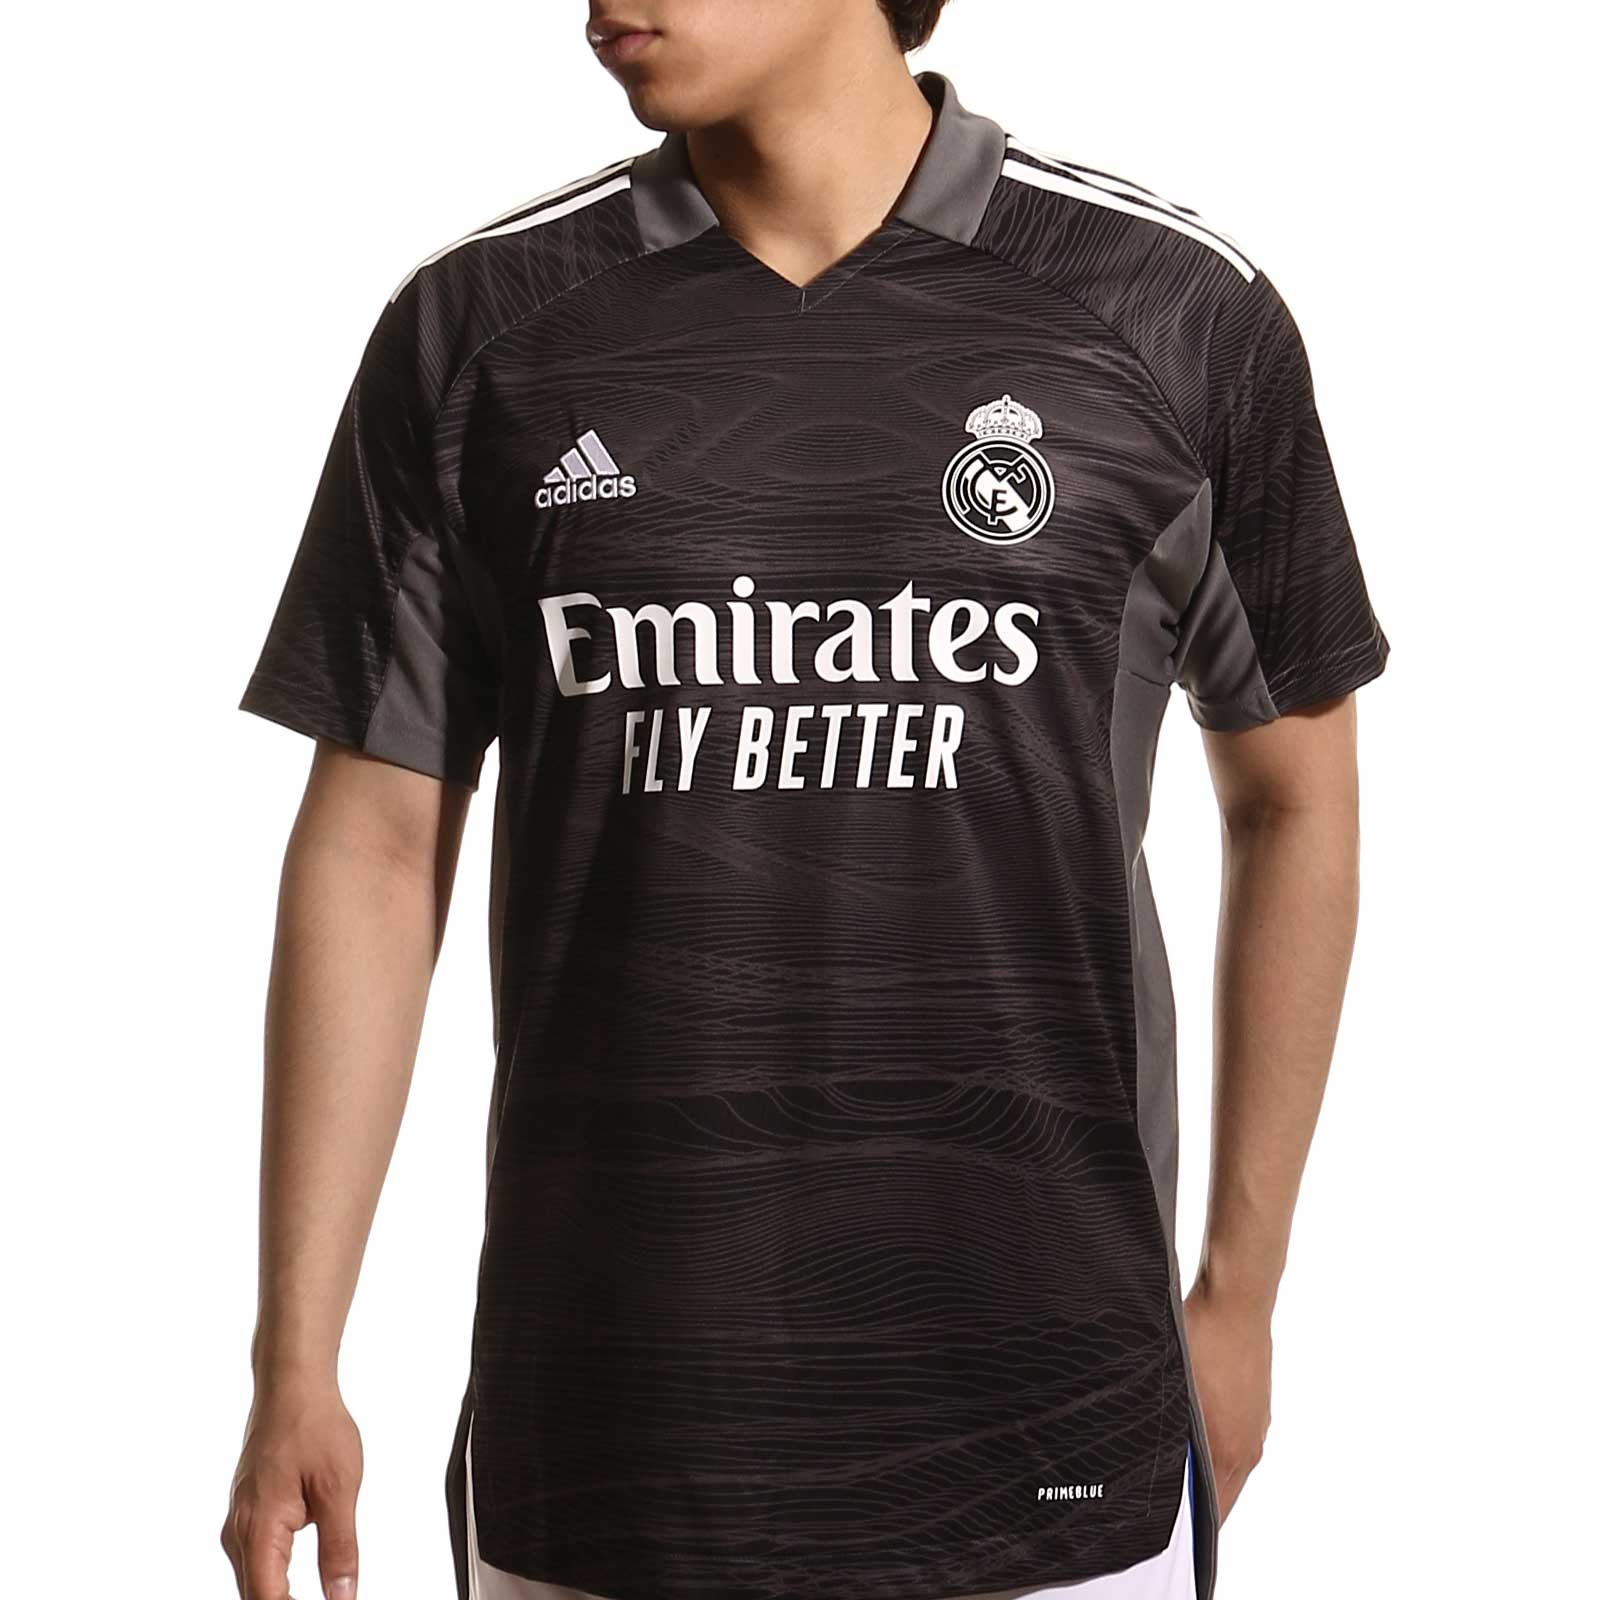 Camiseta manga corta portero Selección Española Fútbol Sala